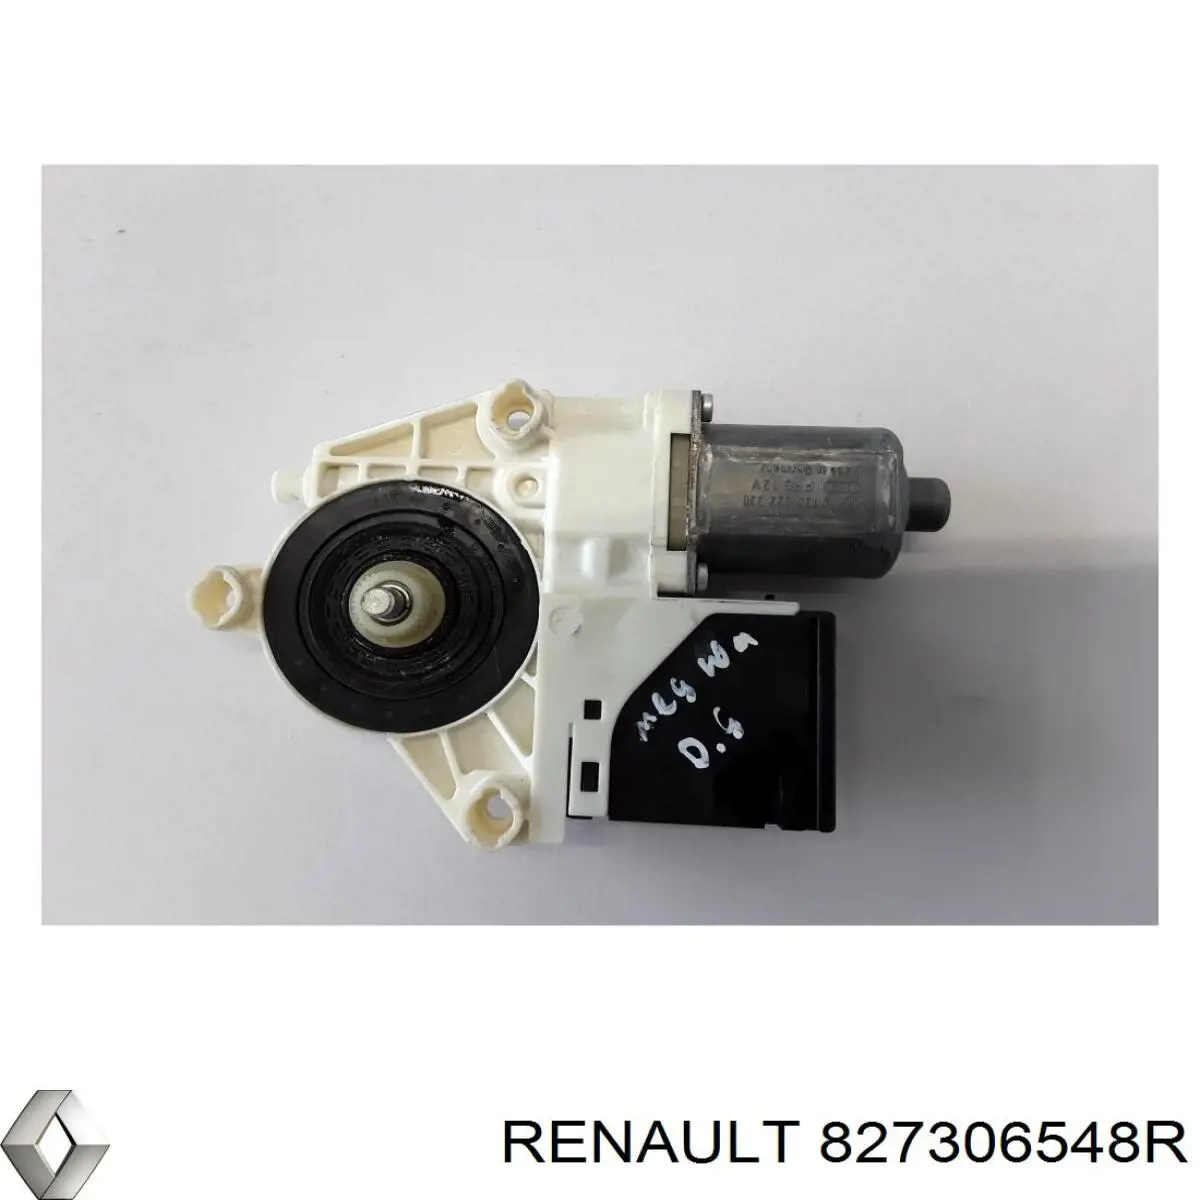 827306548R Renault (RVI) motor eléctrico, elevalunas, puerta trasera derecha